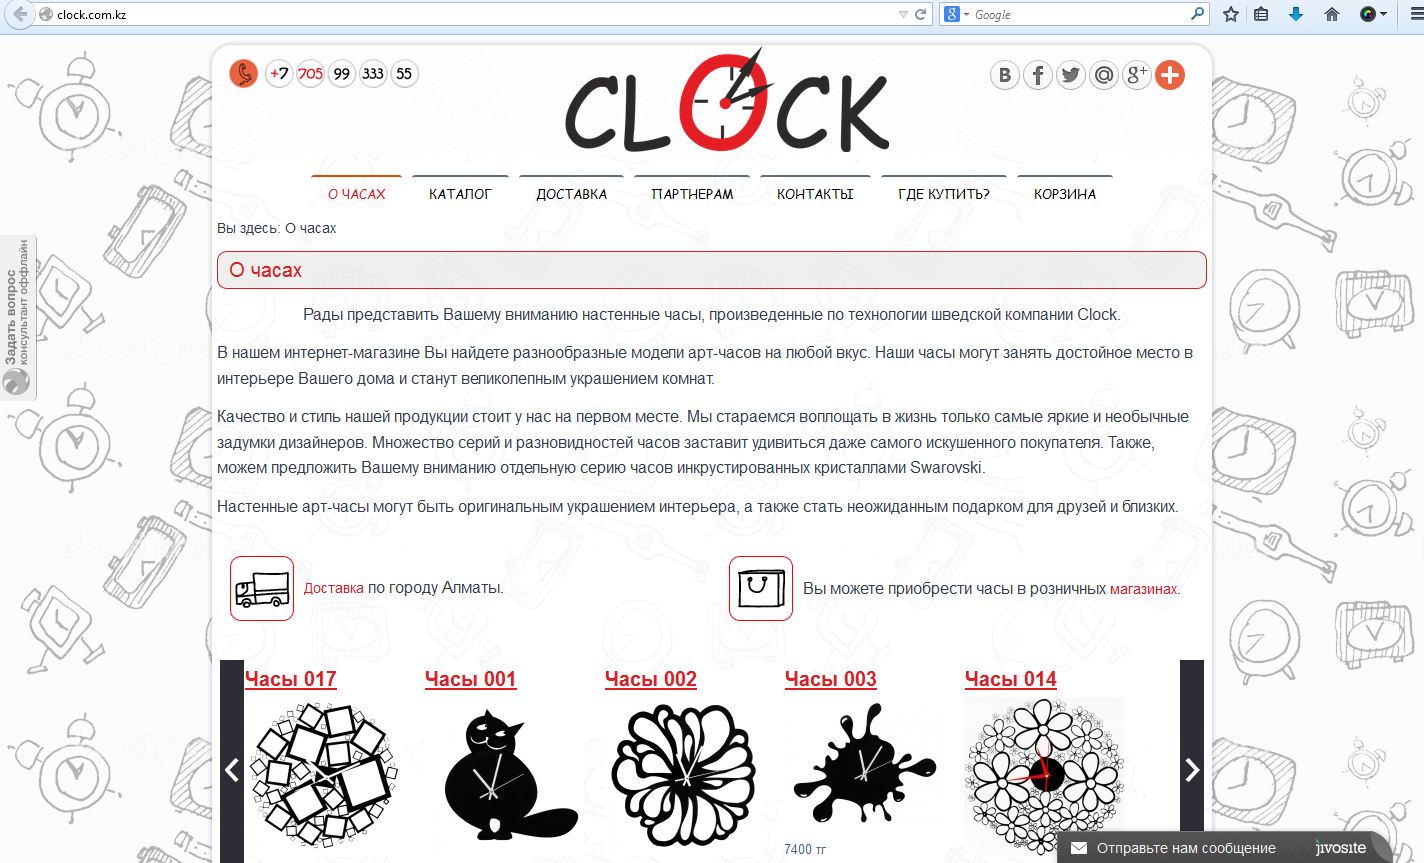 Настенные часы, произведенные по технологии шведской компании Clock